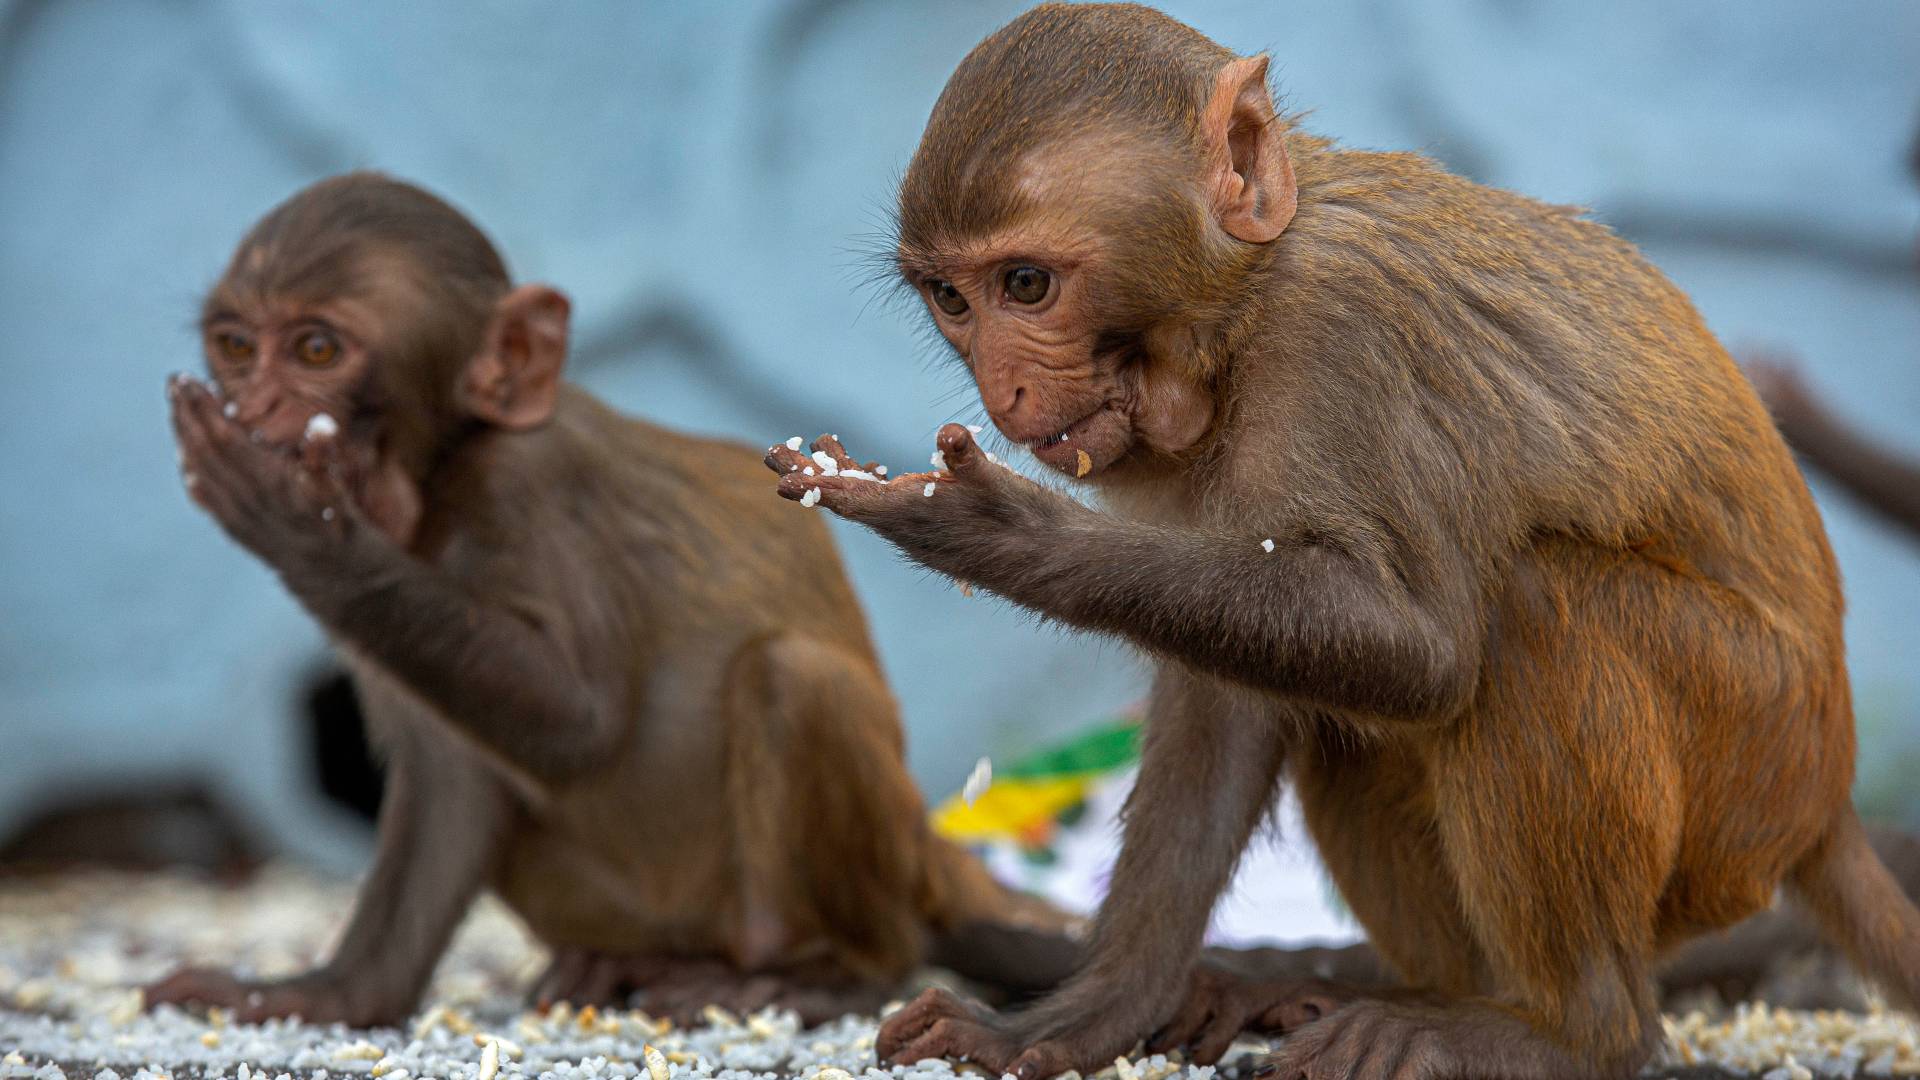 Los monos que han sobrevivido a la COVID-19 pueden desarrollar inmunidad a la enfermedad, según un estudio